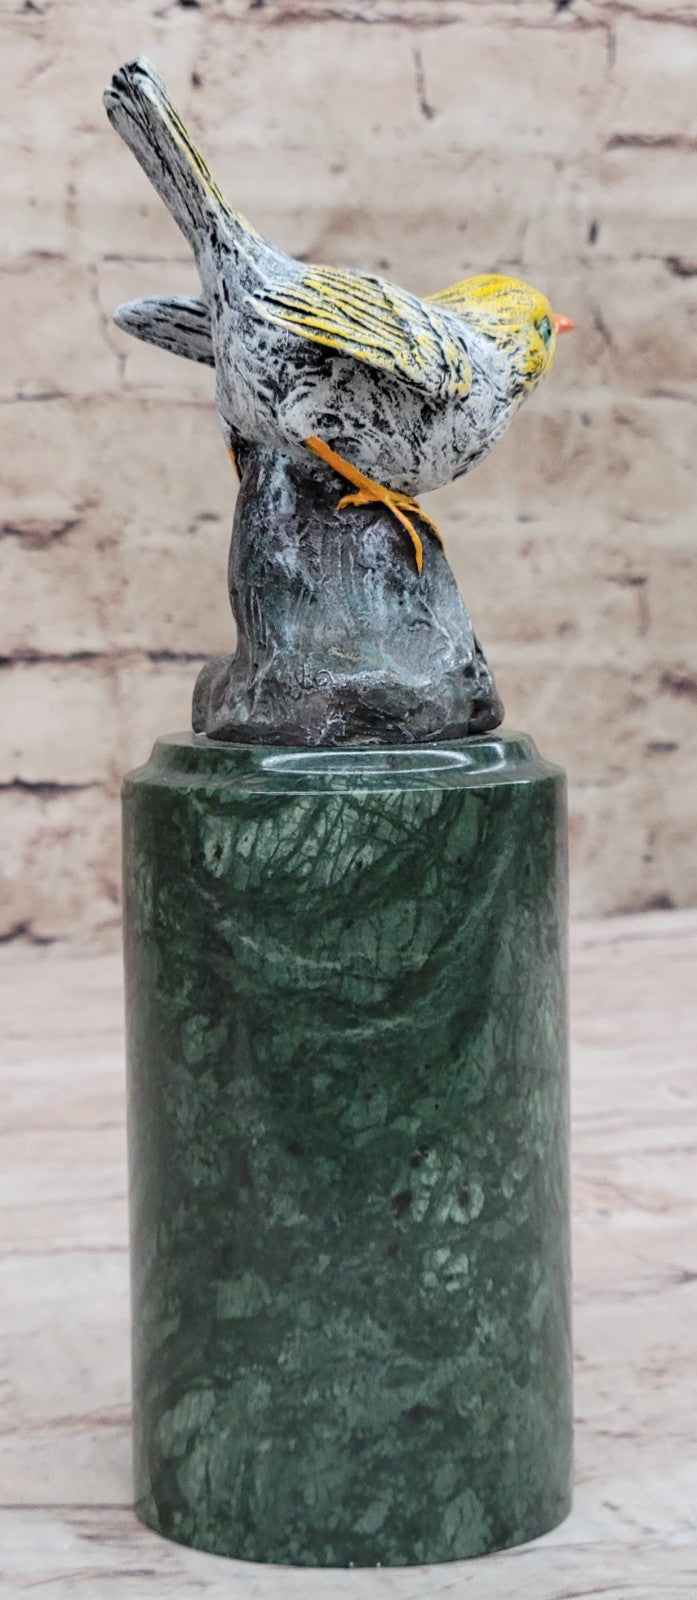 Cold Painted Bronze Sculpture Carrier Pigeon bird 9" excellent Color Art Decor